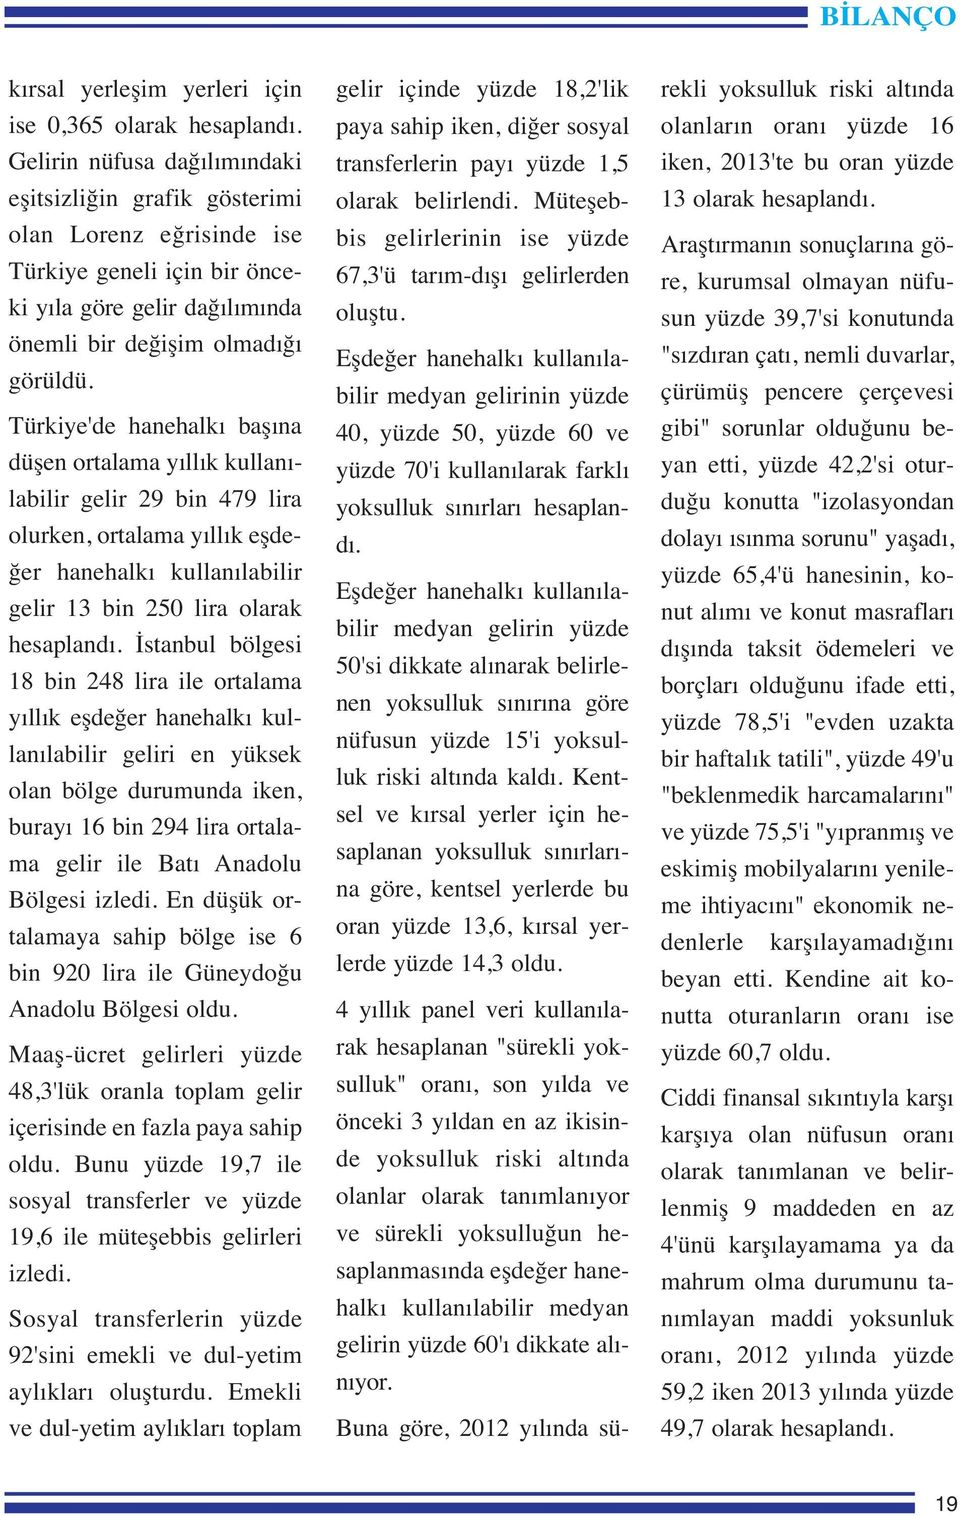 Türkiye'de hanehalkı başına düşen ortalama yıllık kullanılabilir gelir 29 bin 479 lira olurken, ortalama yıllık eşdeğer hanehalkı kullanılabilir gelir 13 bin 250 lira olarak hesaplandı.